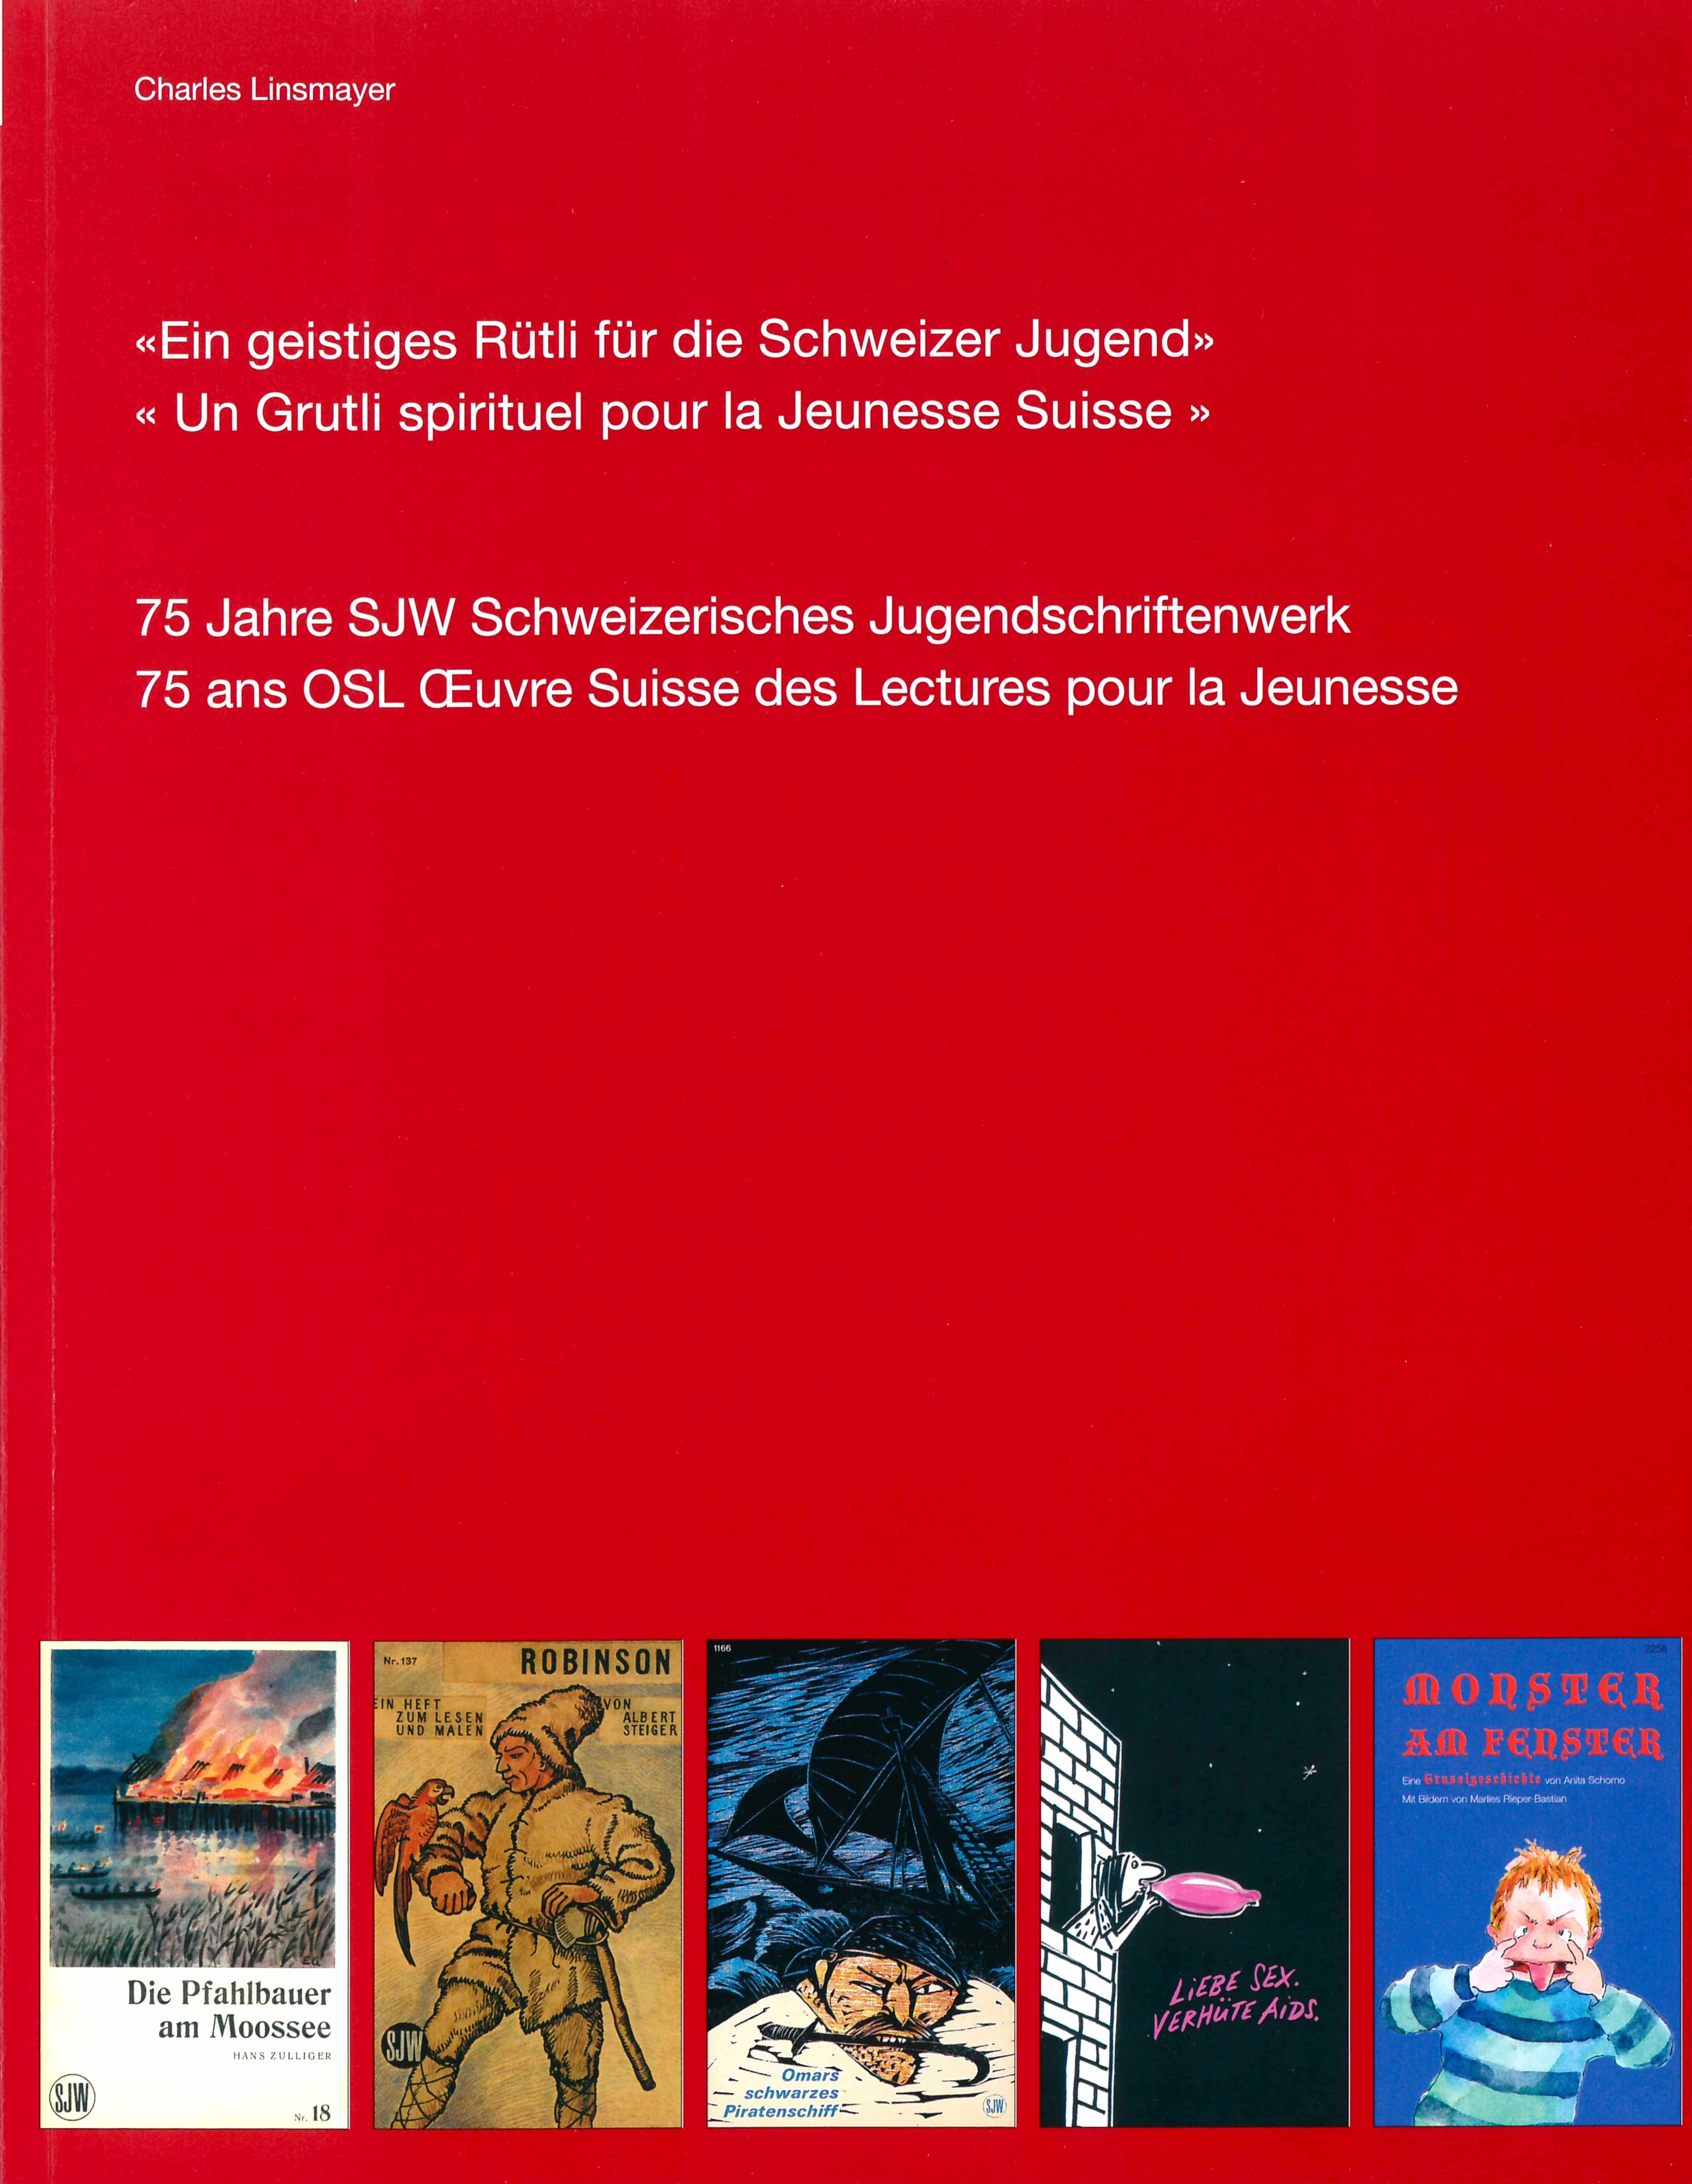 Ein geistiges Ruetli fuer die Schweizer Jugend – Un Grutli spirituel pour la Jeunesse Suisse, Buch von Charles Linsmayer, SJW